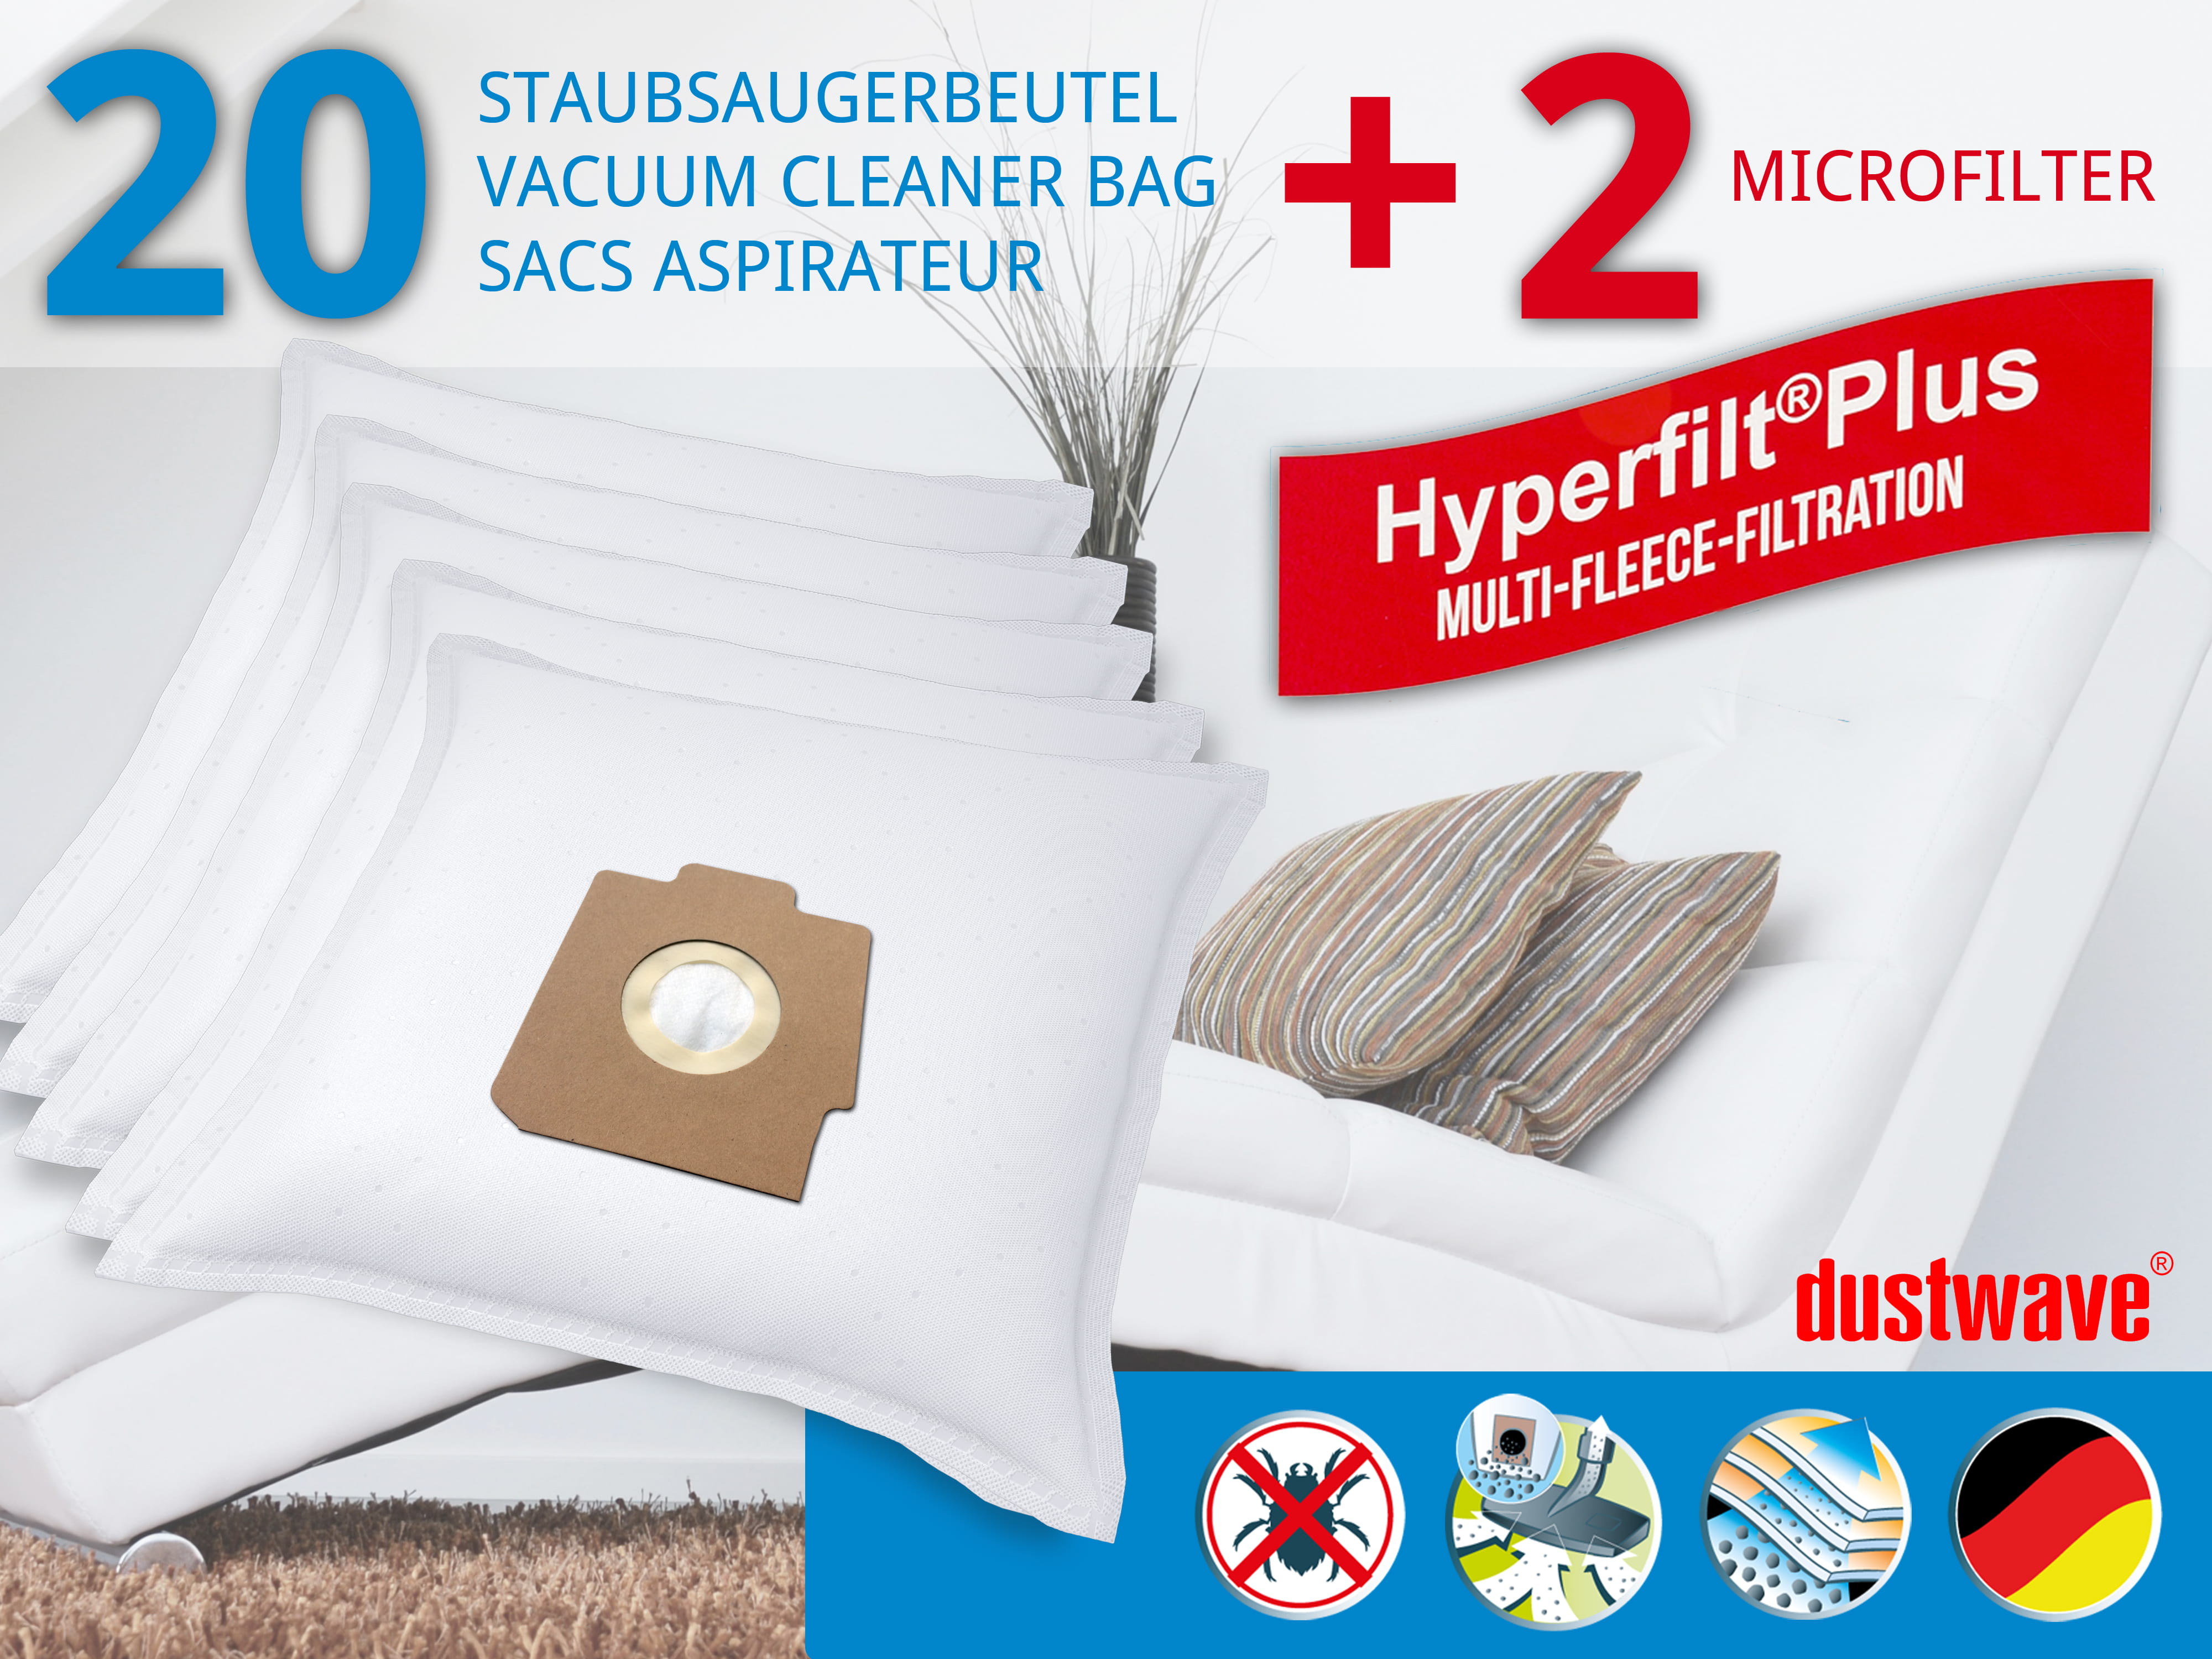 Dustwave® 20 Staubsaugerbeutel für Hoover S3134 / TRS3134 - hocheffizient, mehrlagiges Mikrovlies mit Hygieneverschluss - Made in Germany